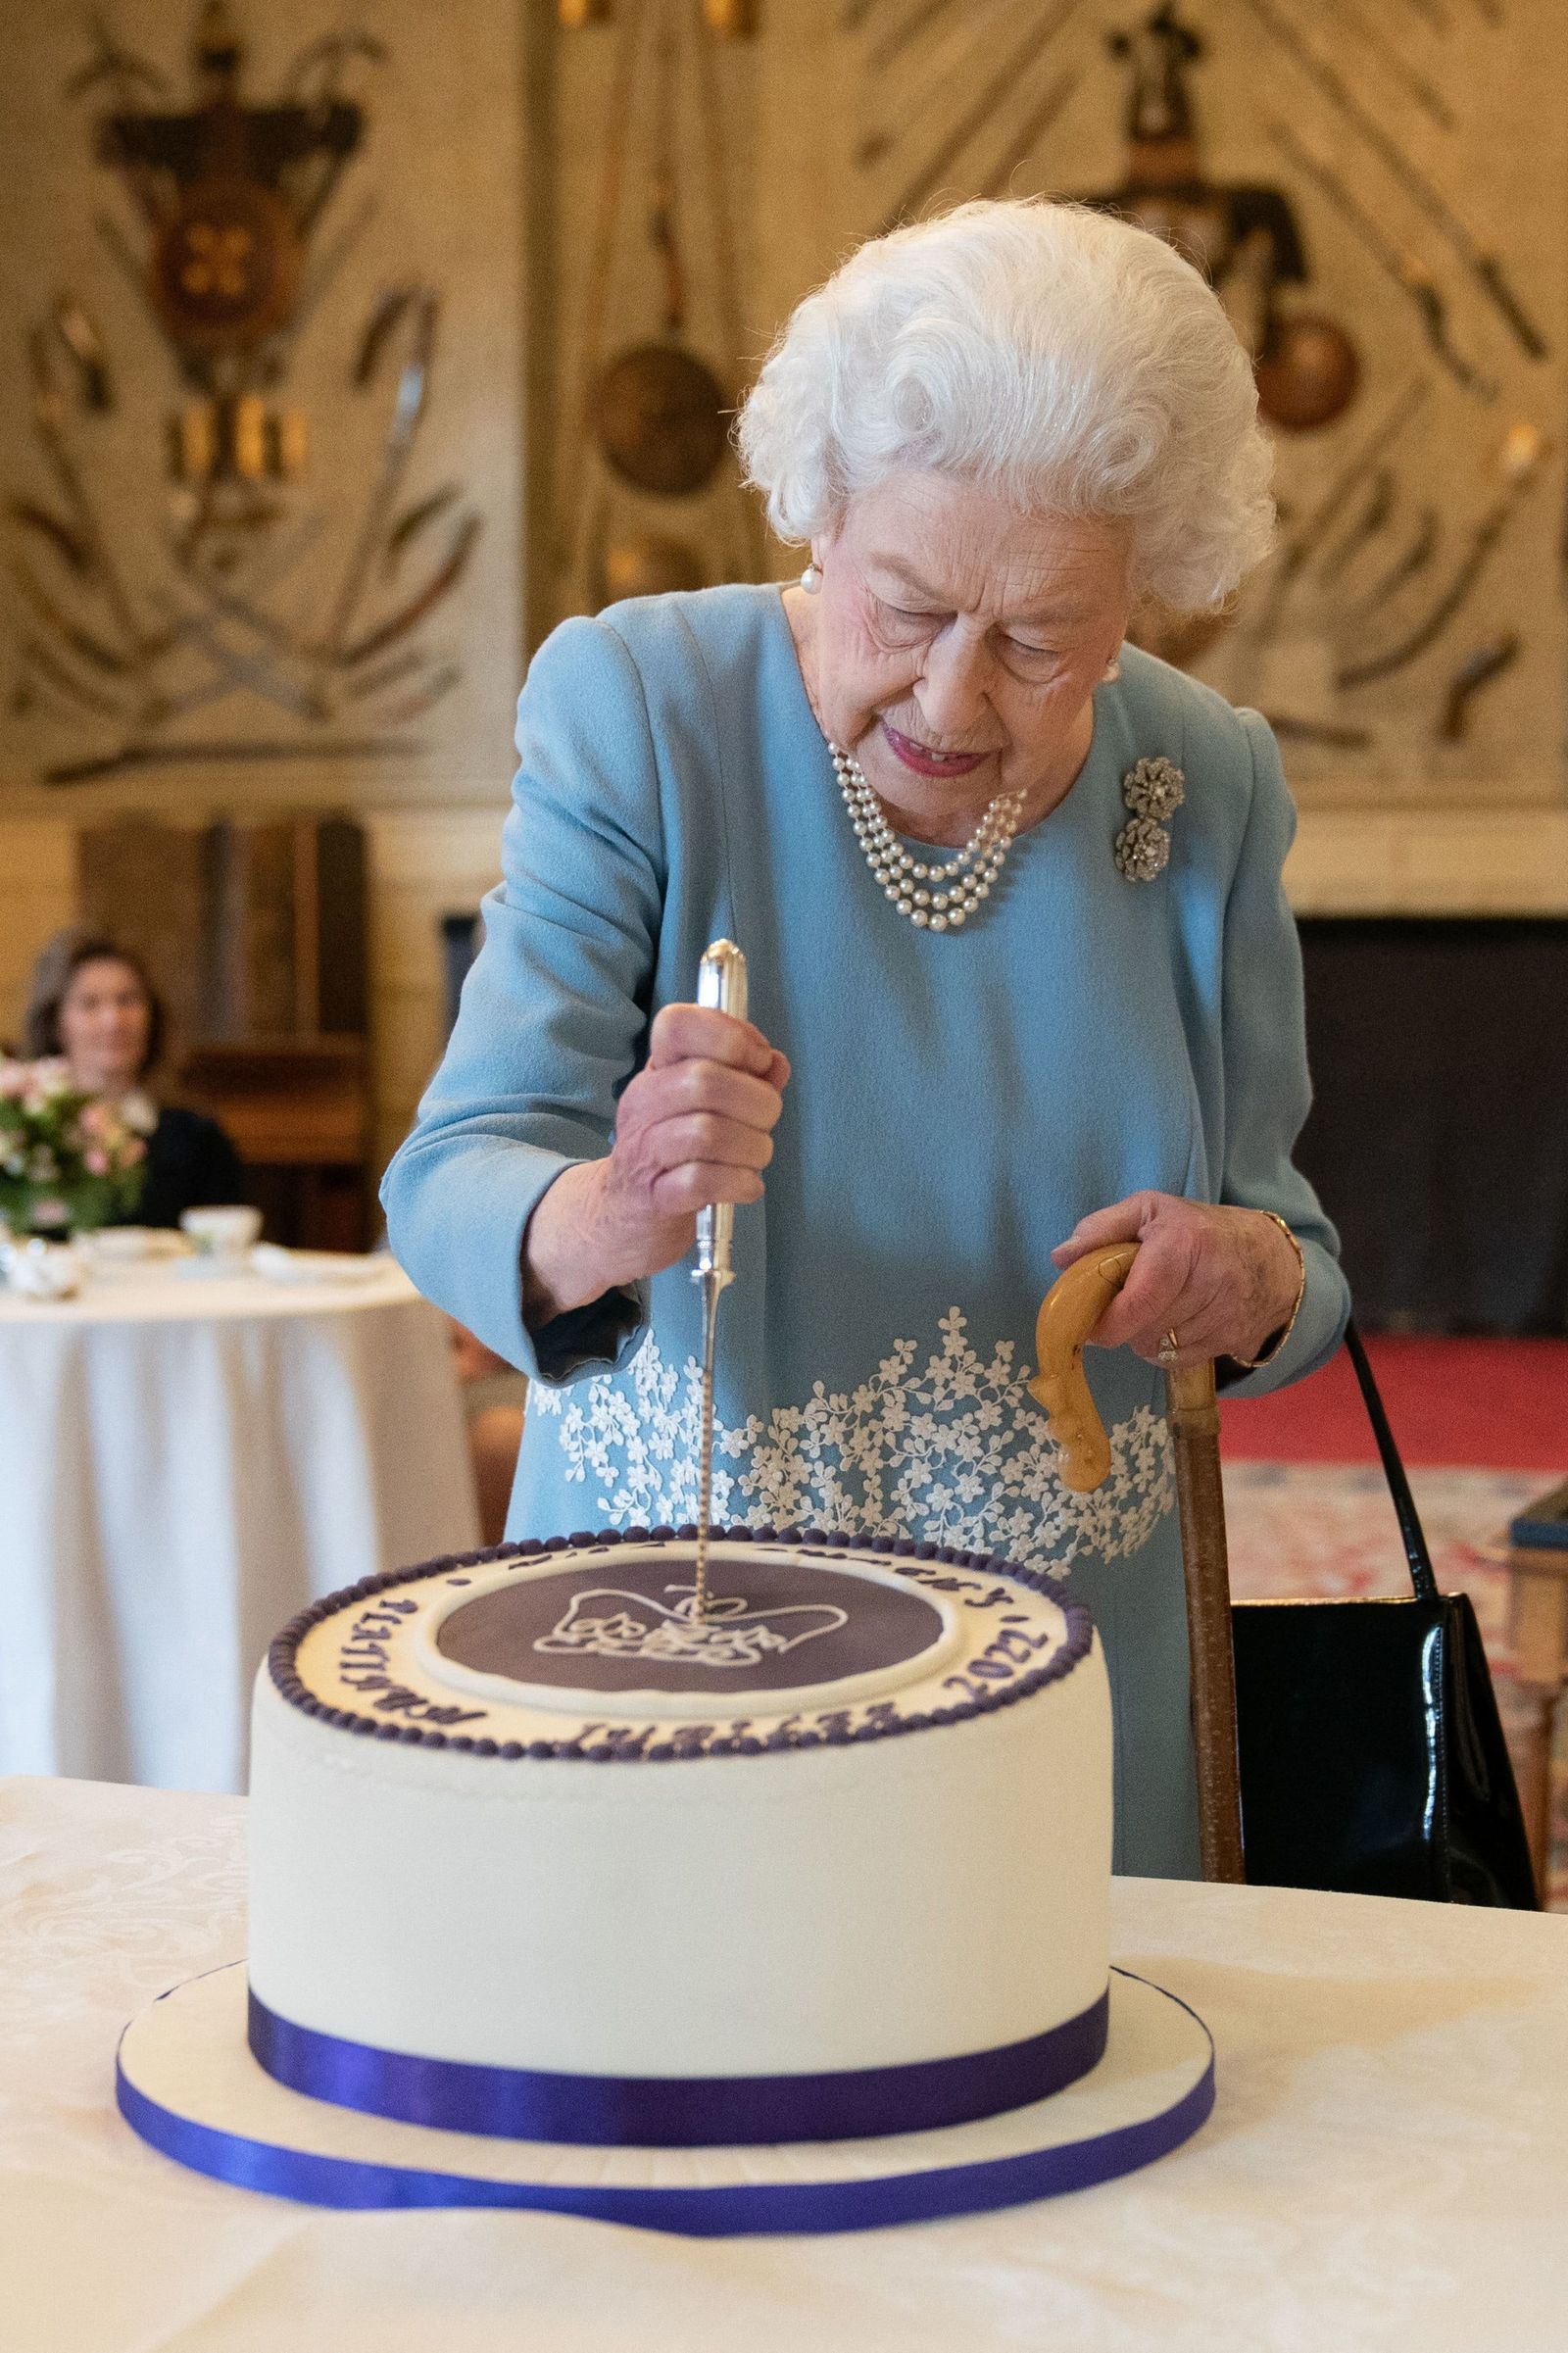 ملكة بريطانيا إليزابيث الثانية تقطع كعكة للاحتفال ببداية اليوبيل البلاتيني خلال حفل استقبال في مقر إقامة الملكة في نورفولك. 5 فبراير 2022  - AFP